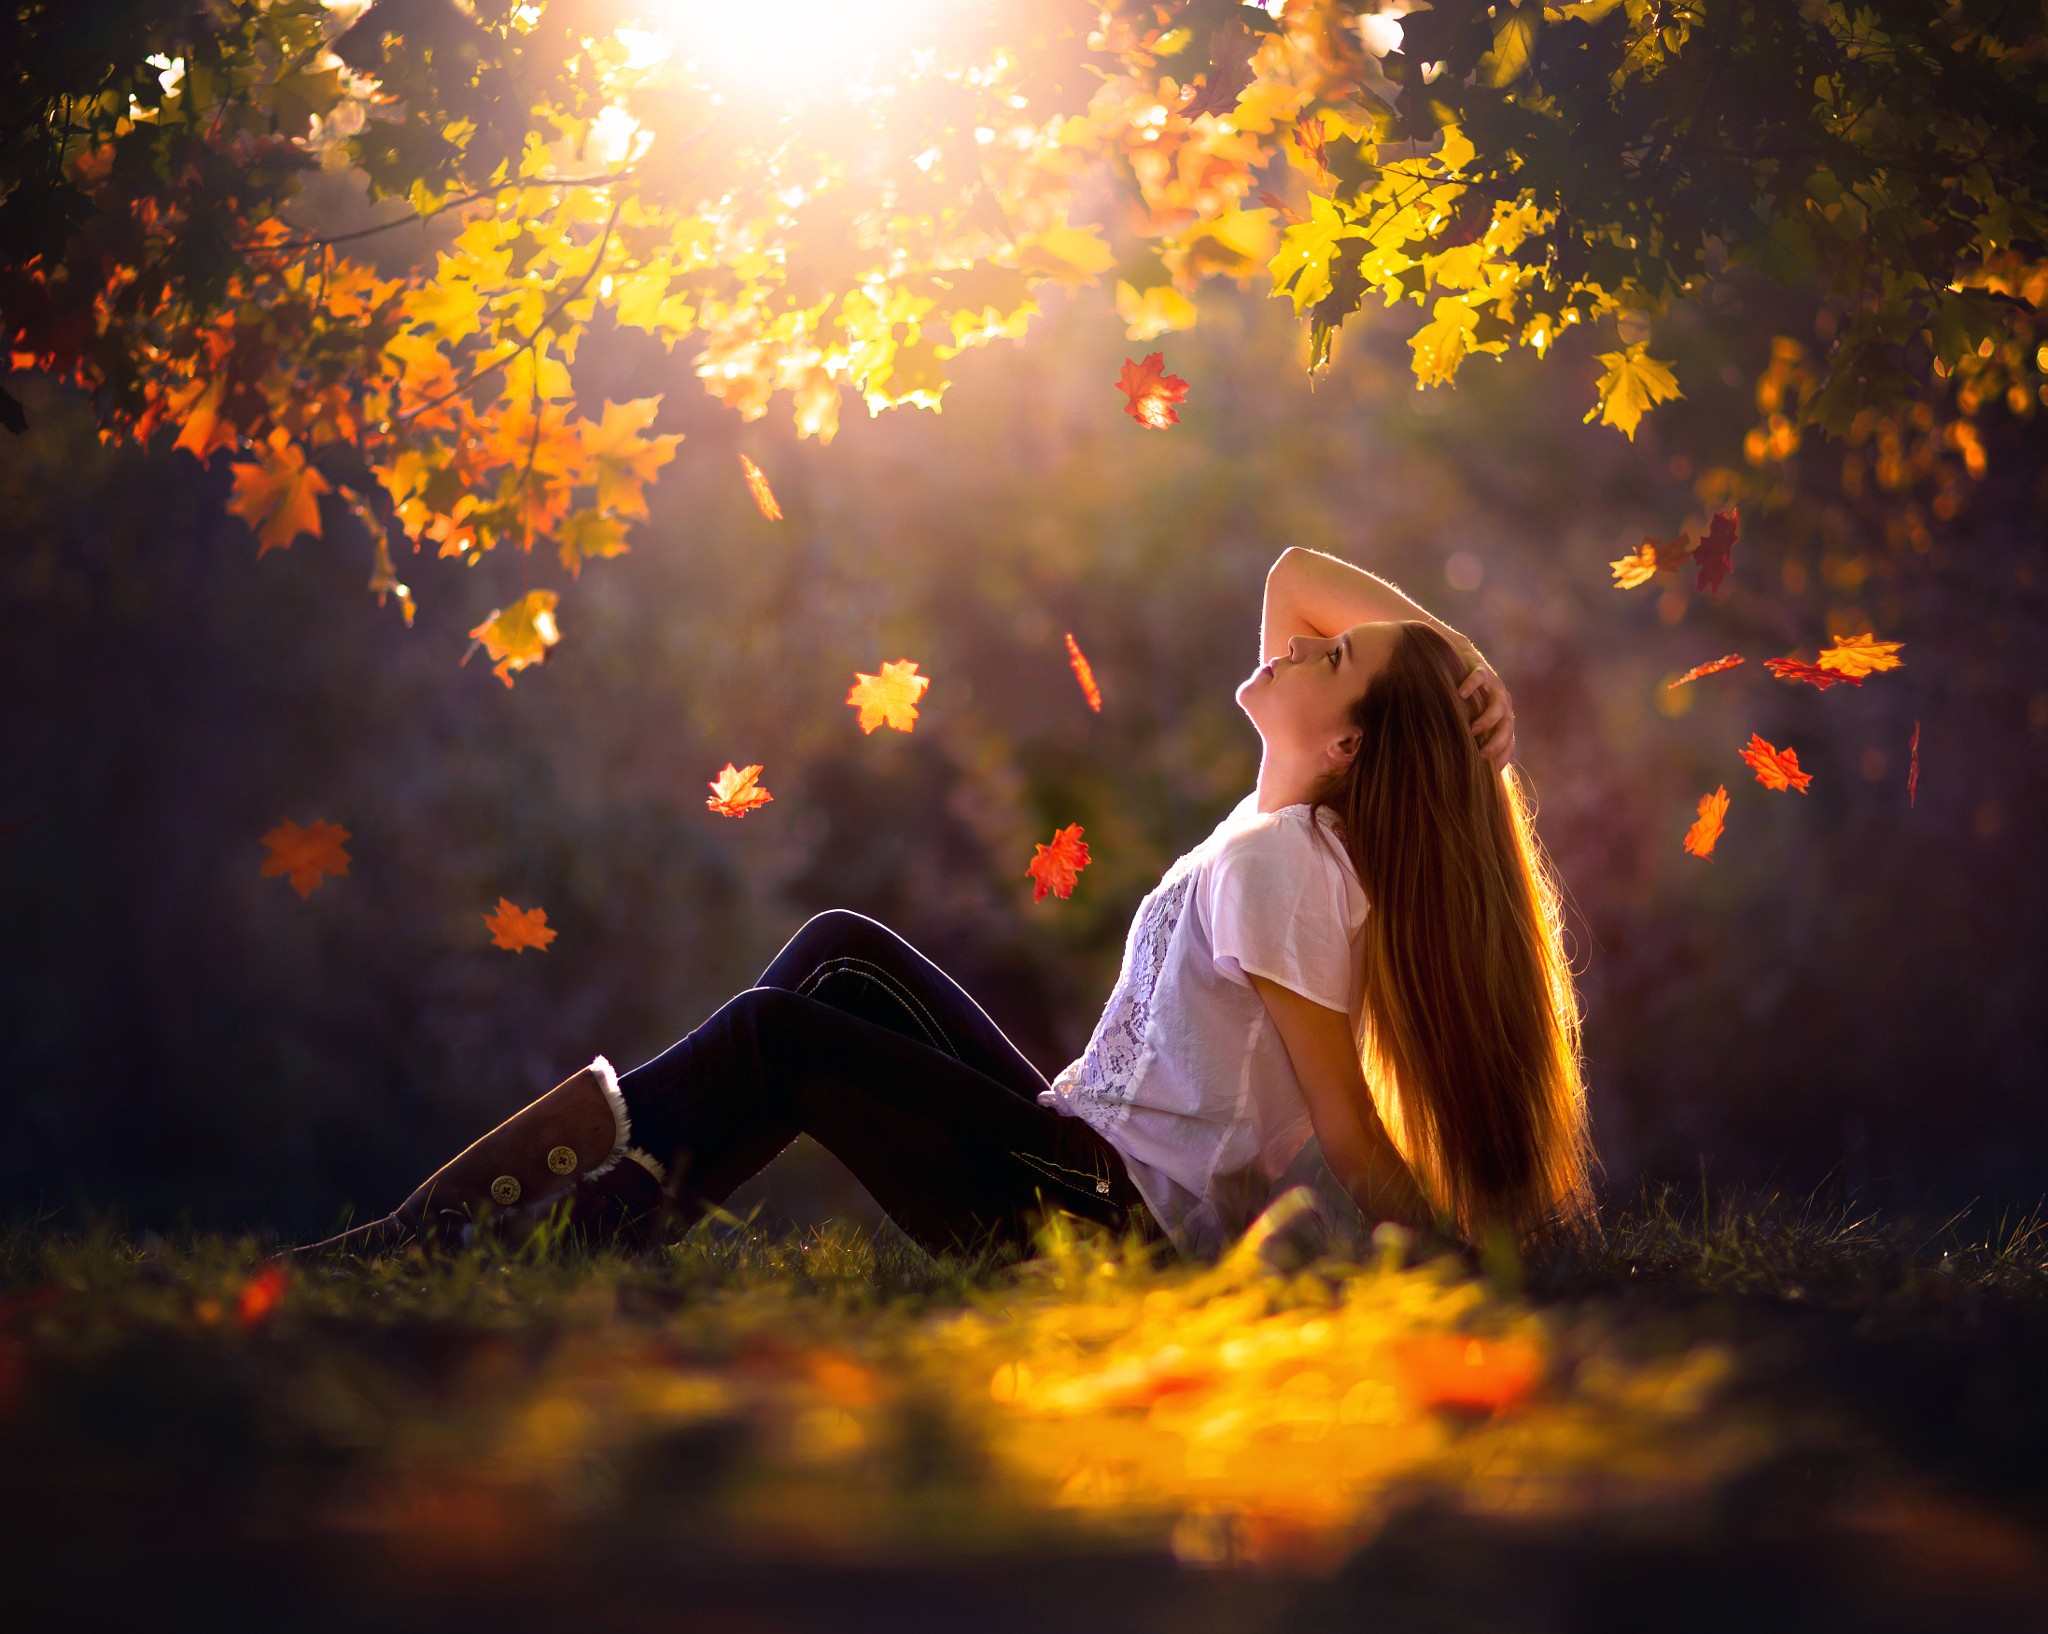 Бесплатное фото Молодая шатенка в осеннем лесу греется при солнечном свете